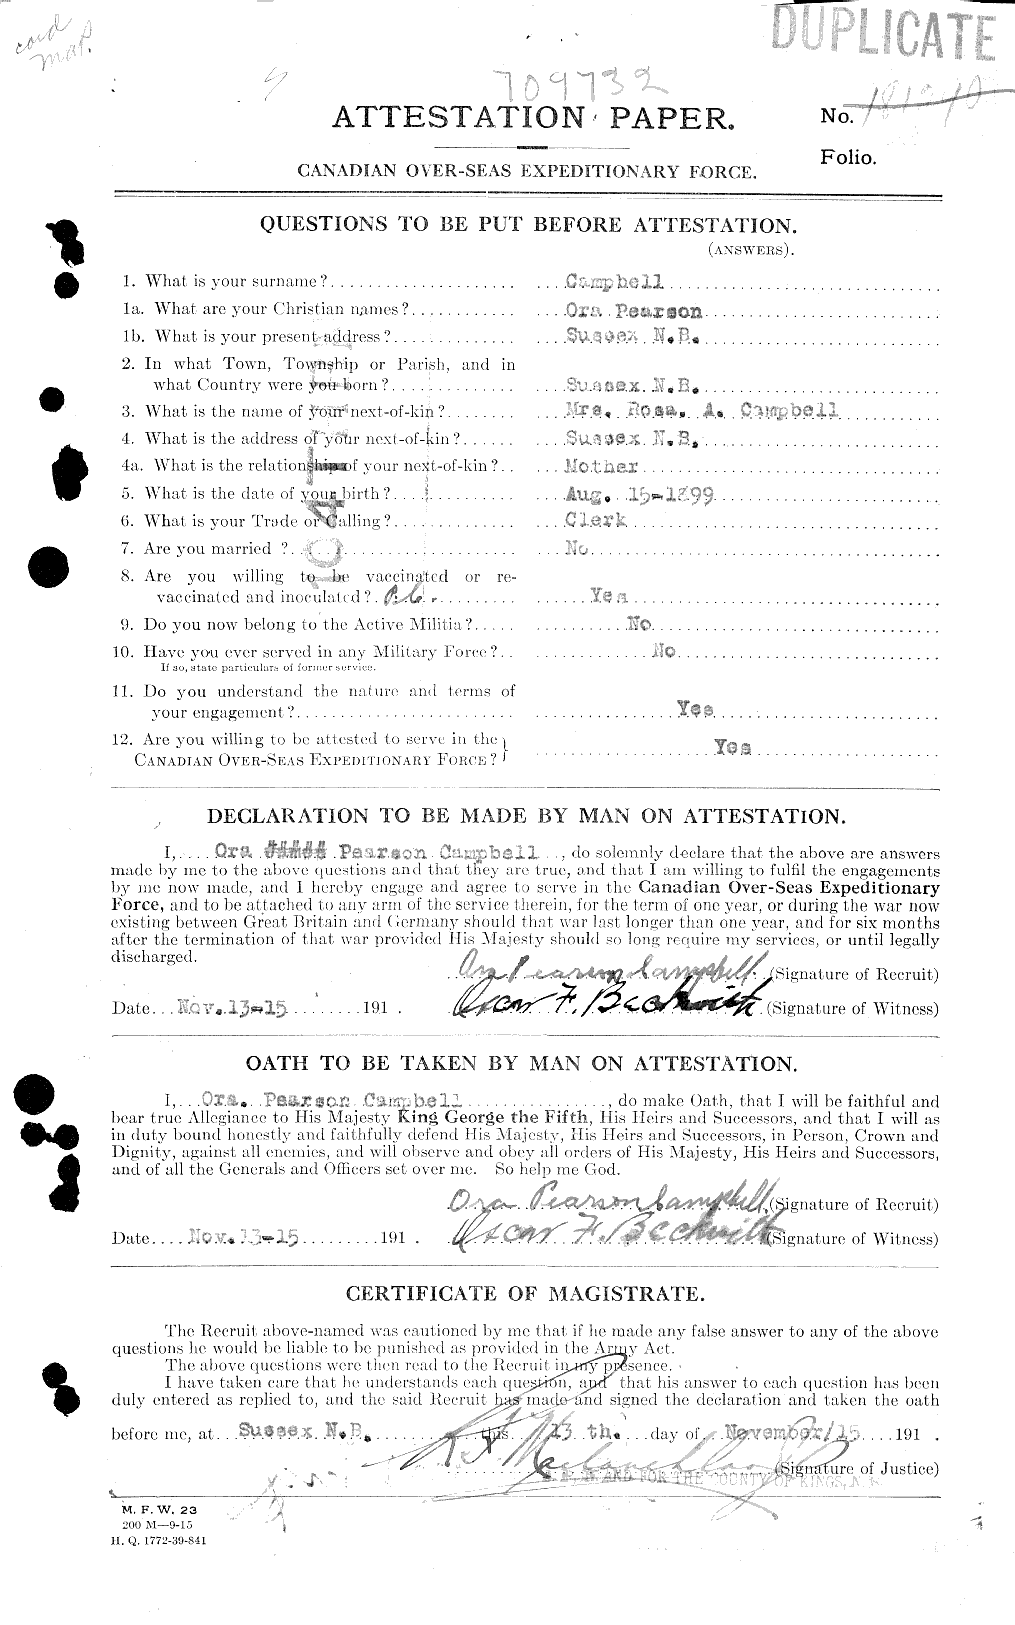 Dossiers du Personnel de la Première Guerre mondiale - CEC 006983a